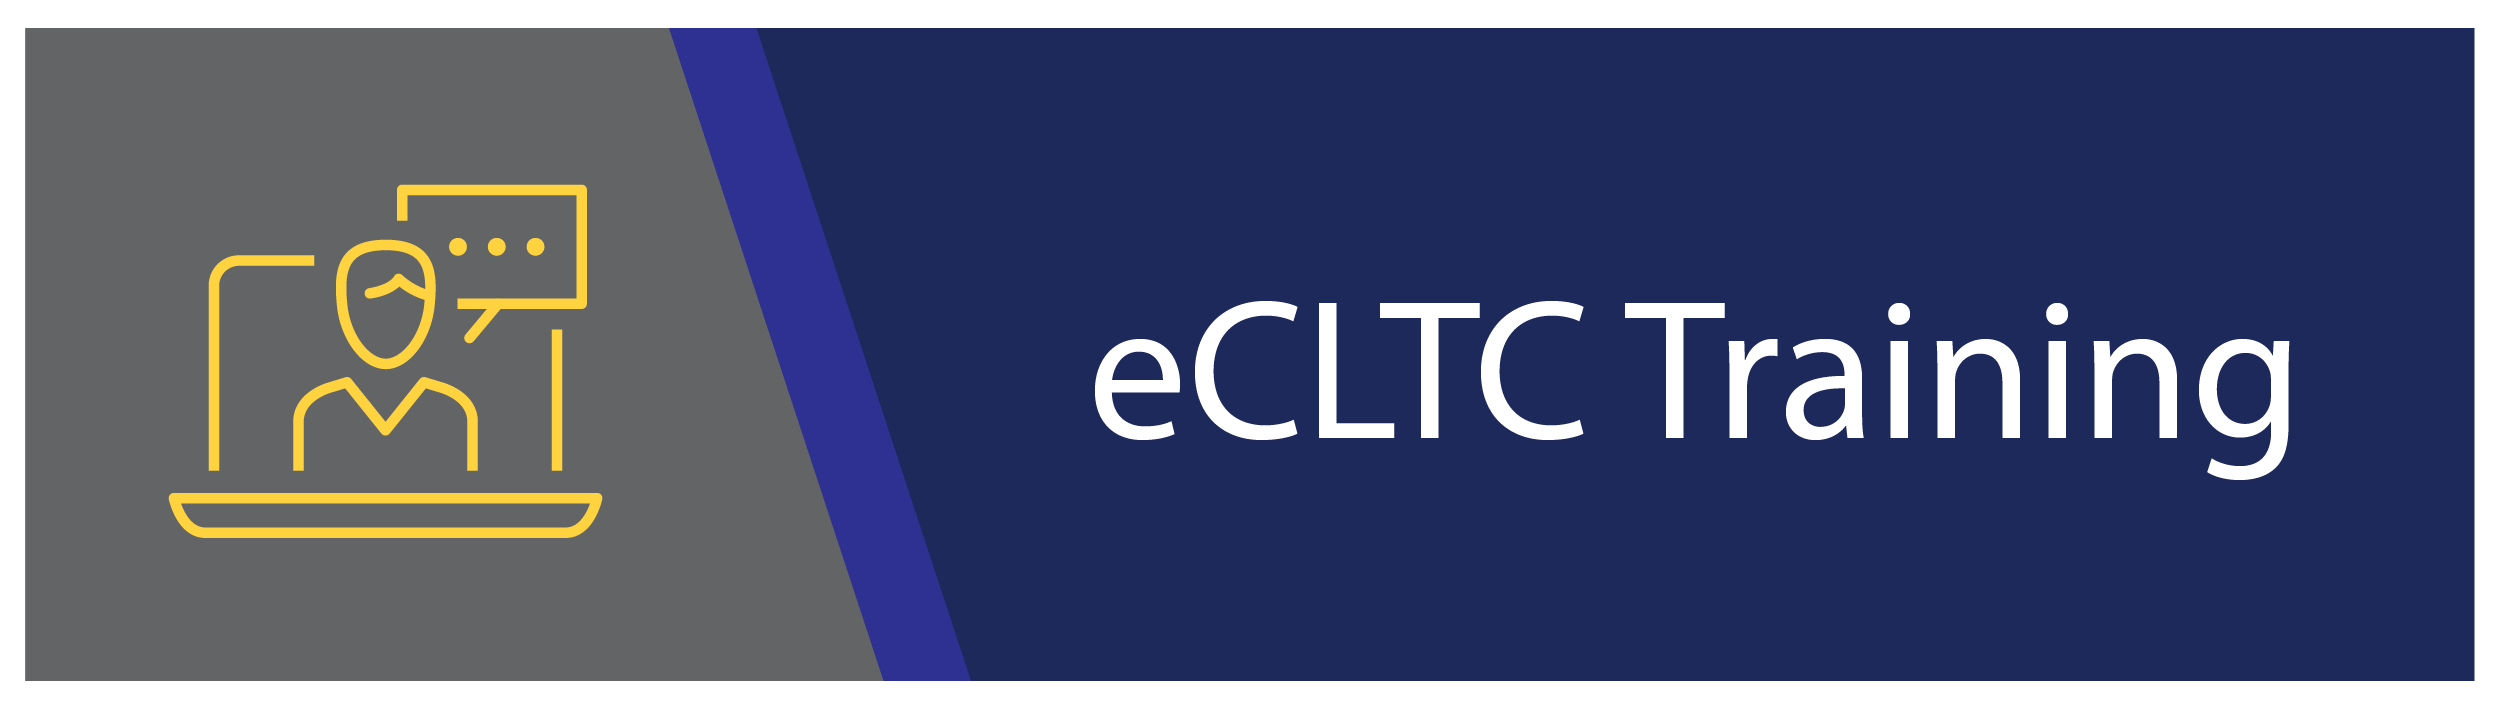 eCLTC Training